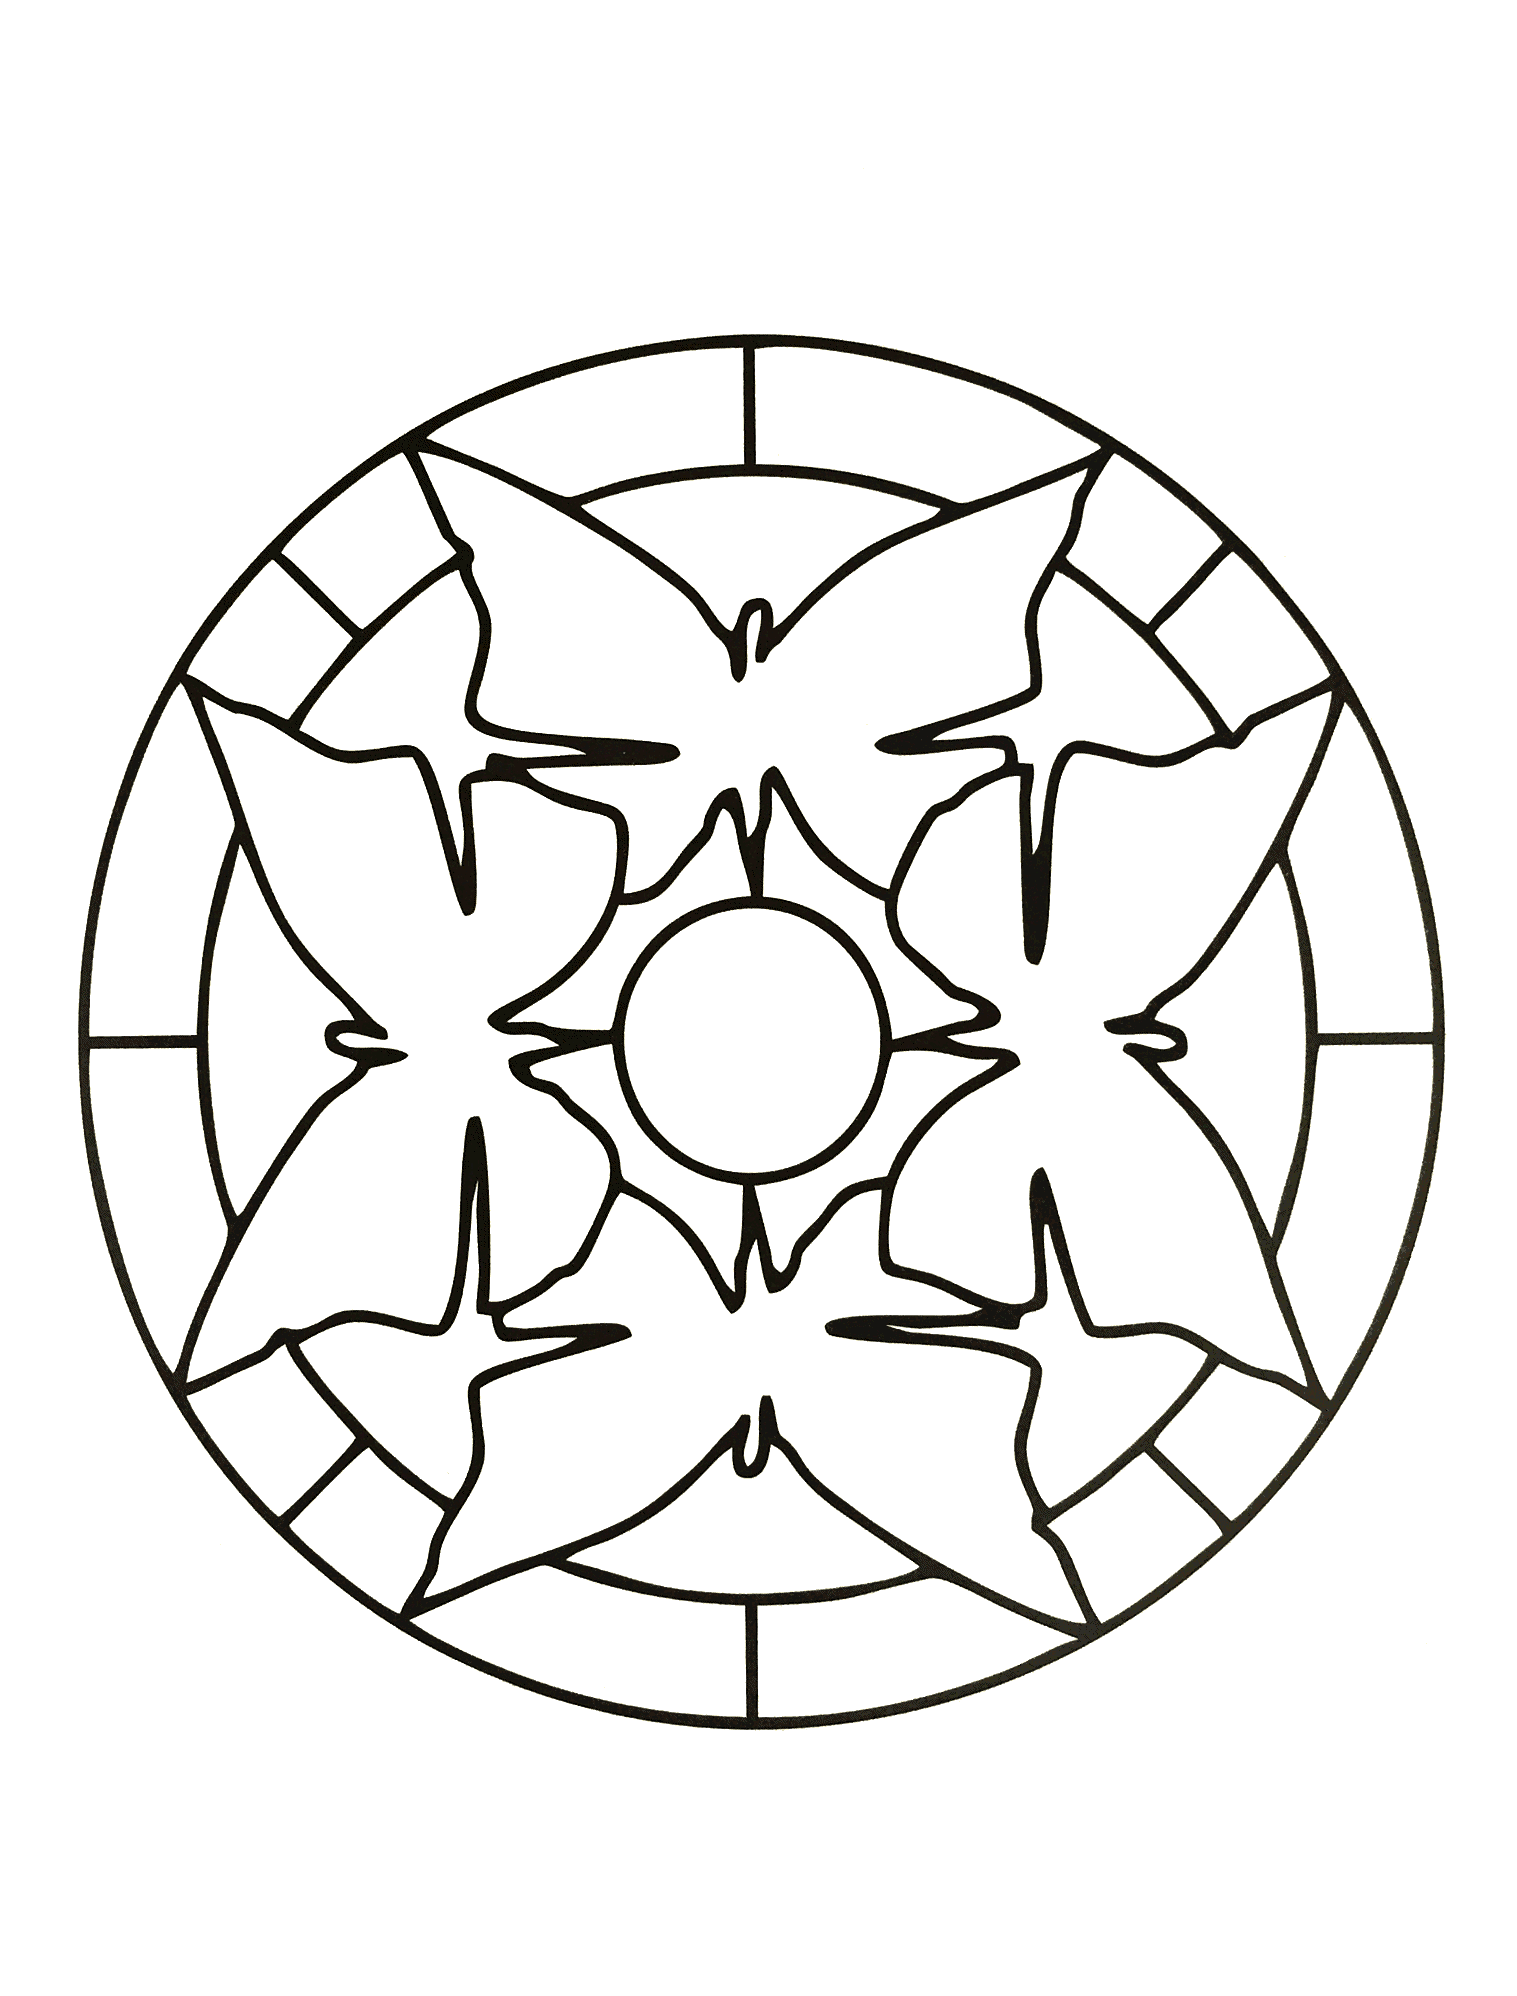 Joli mandala avec de jolis papillons et un cercle au milieu. Assez simple à colorier.